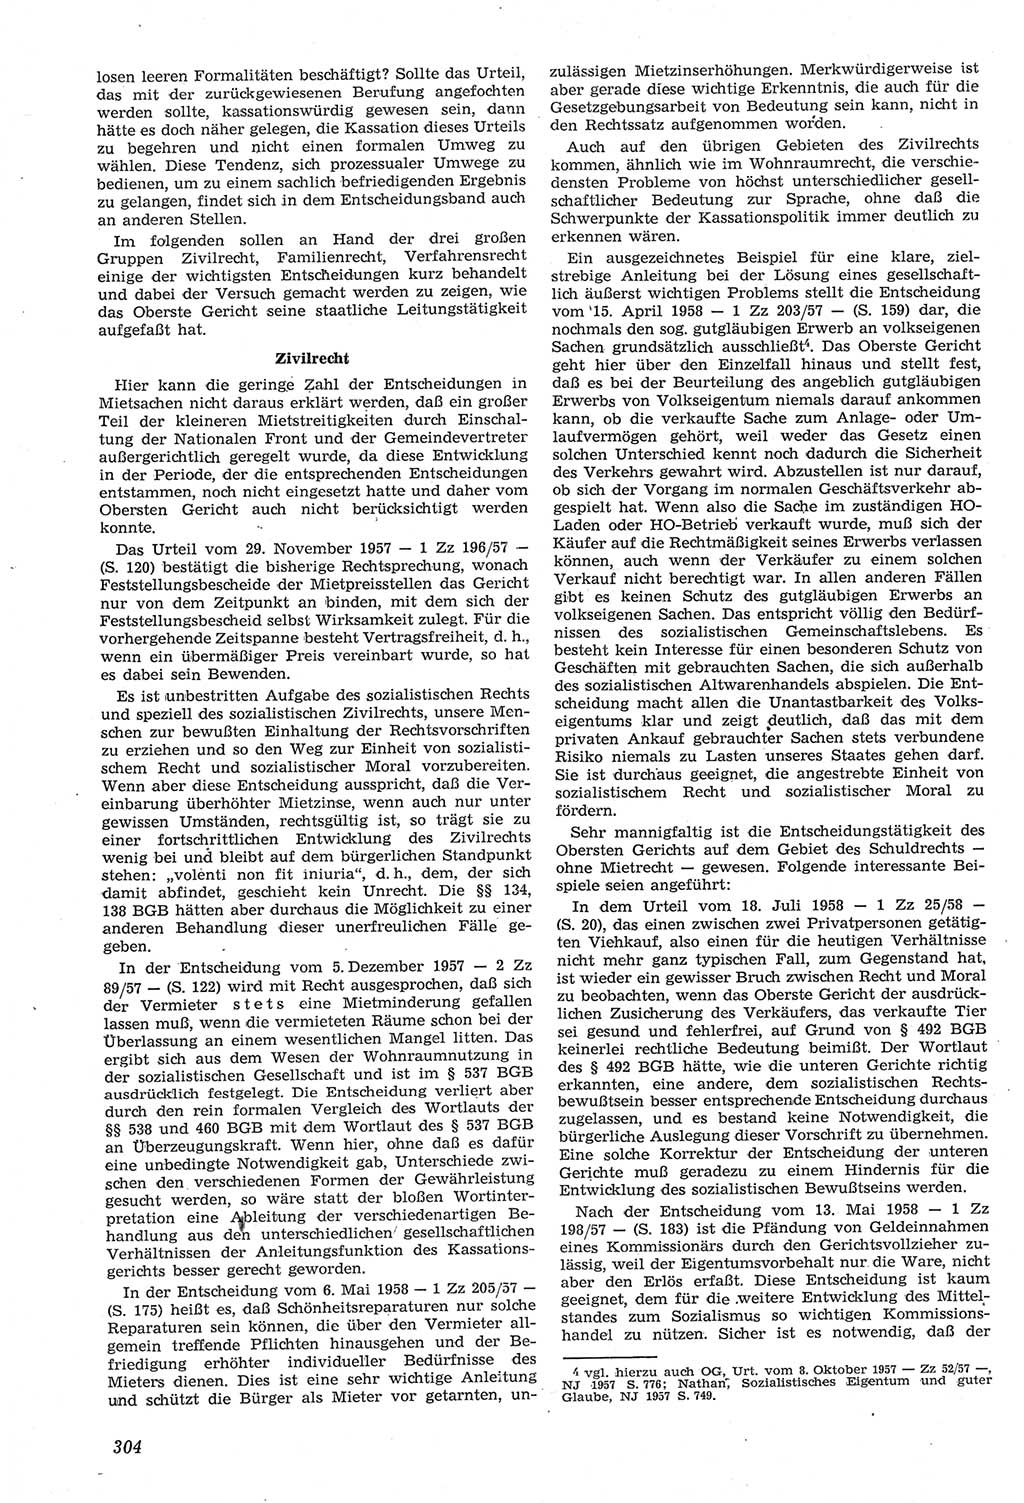 Neue Justiz (NJ), Zeitschrift für Recht und Rechtswissenschaft [Deutsche Demokratische Republik (DDR)], 14. Jahrgang 1960, Seite 304 (NJ DDR 1960, S. 304)